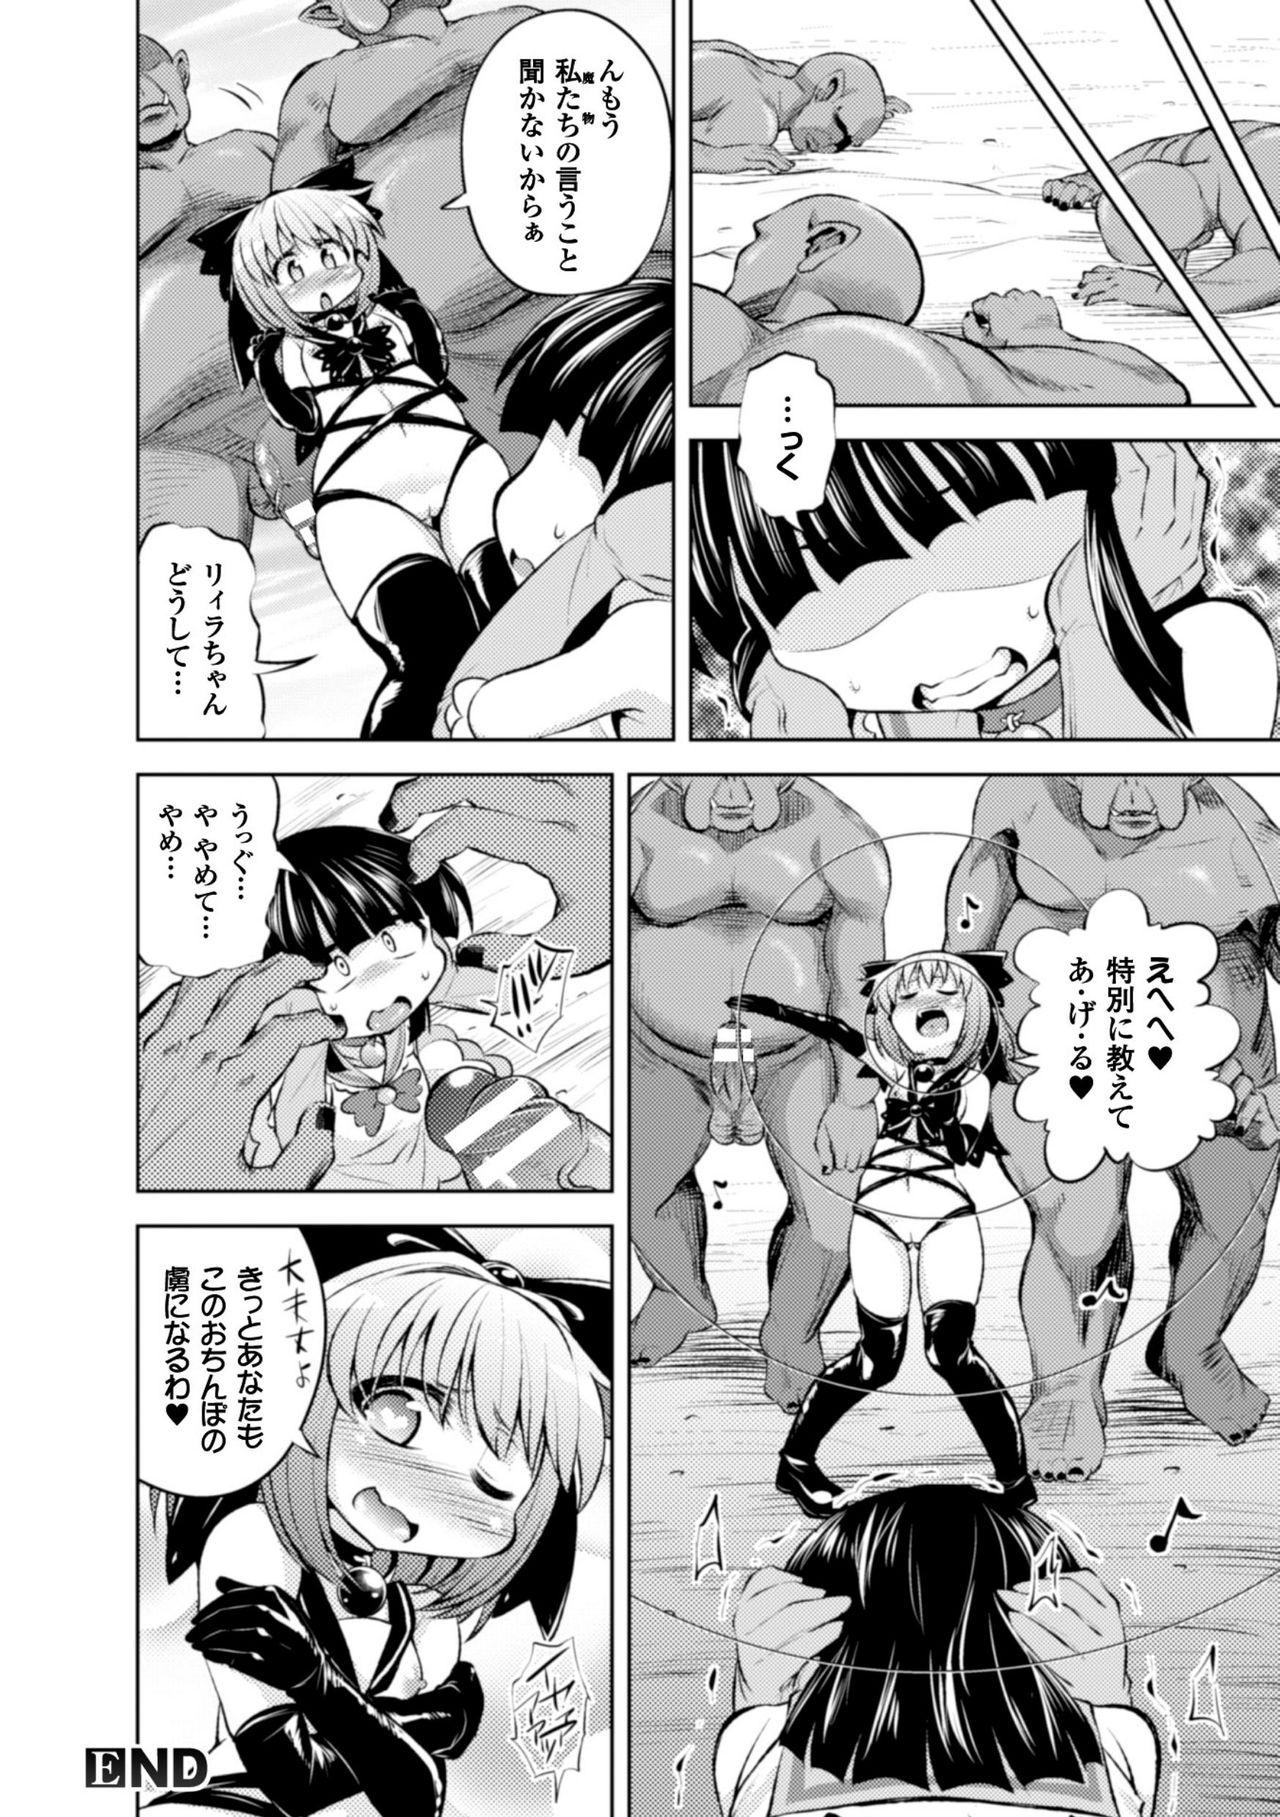 Seigi no Heroine Kangoku File Vol. 8 36